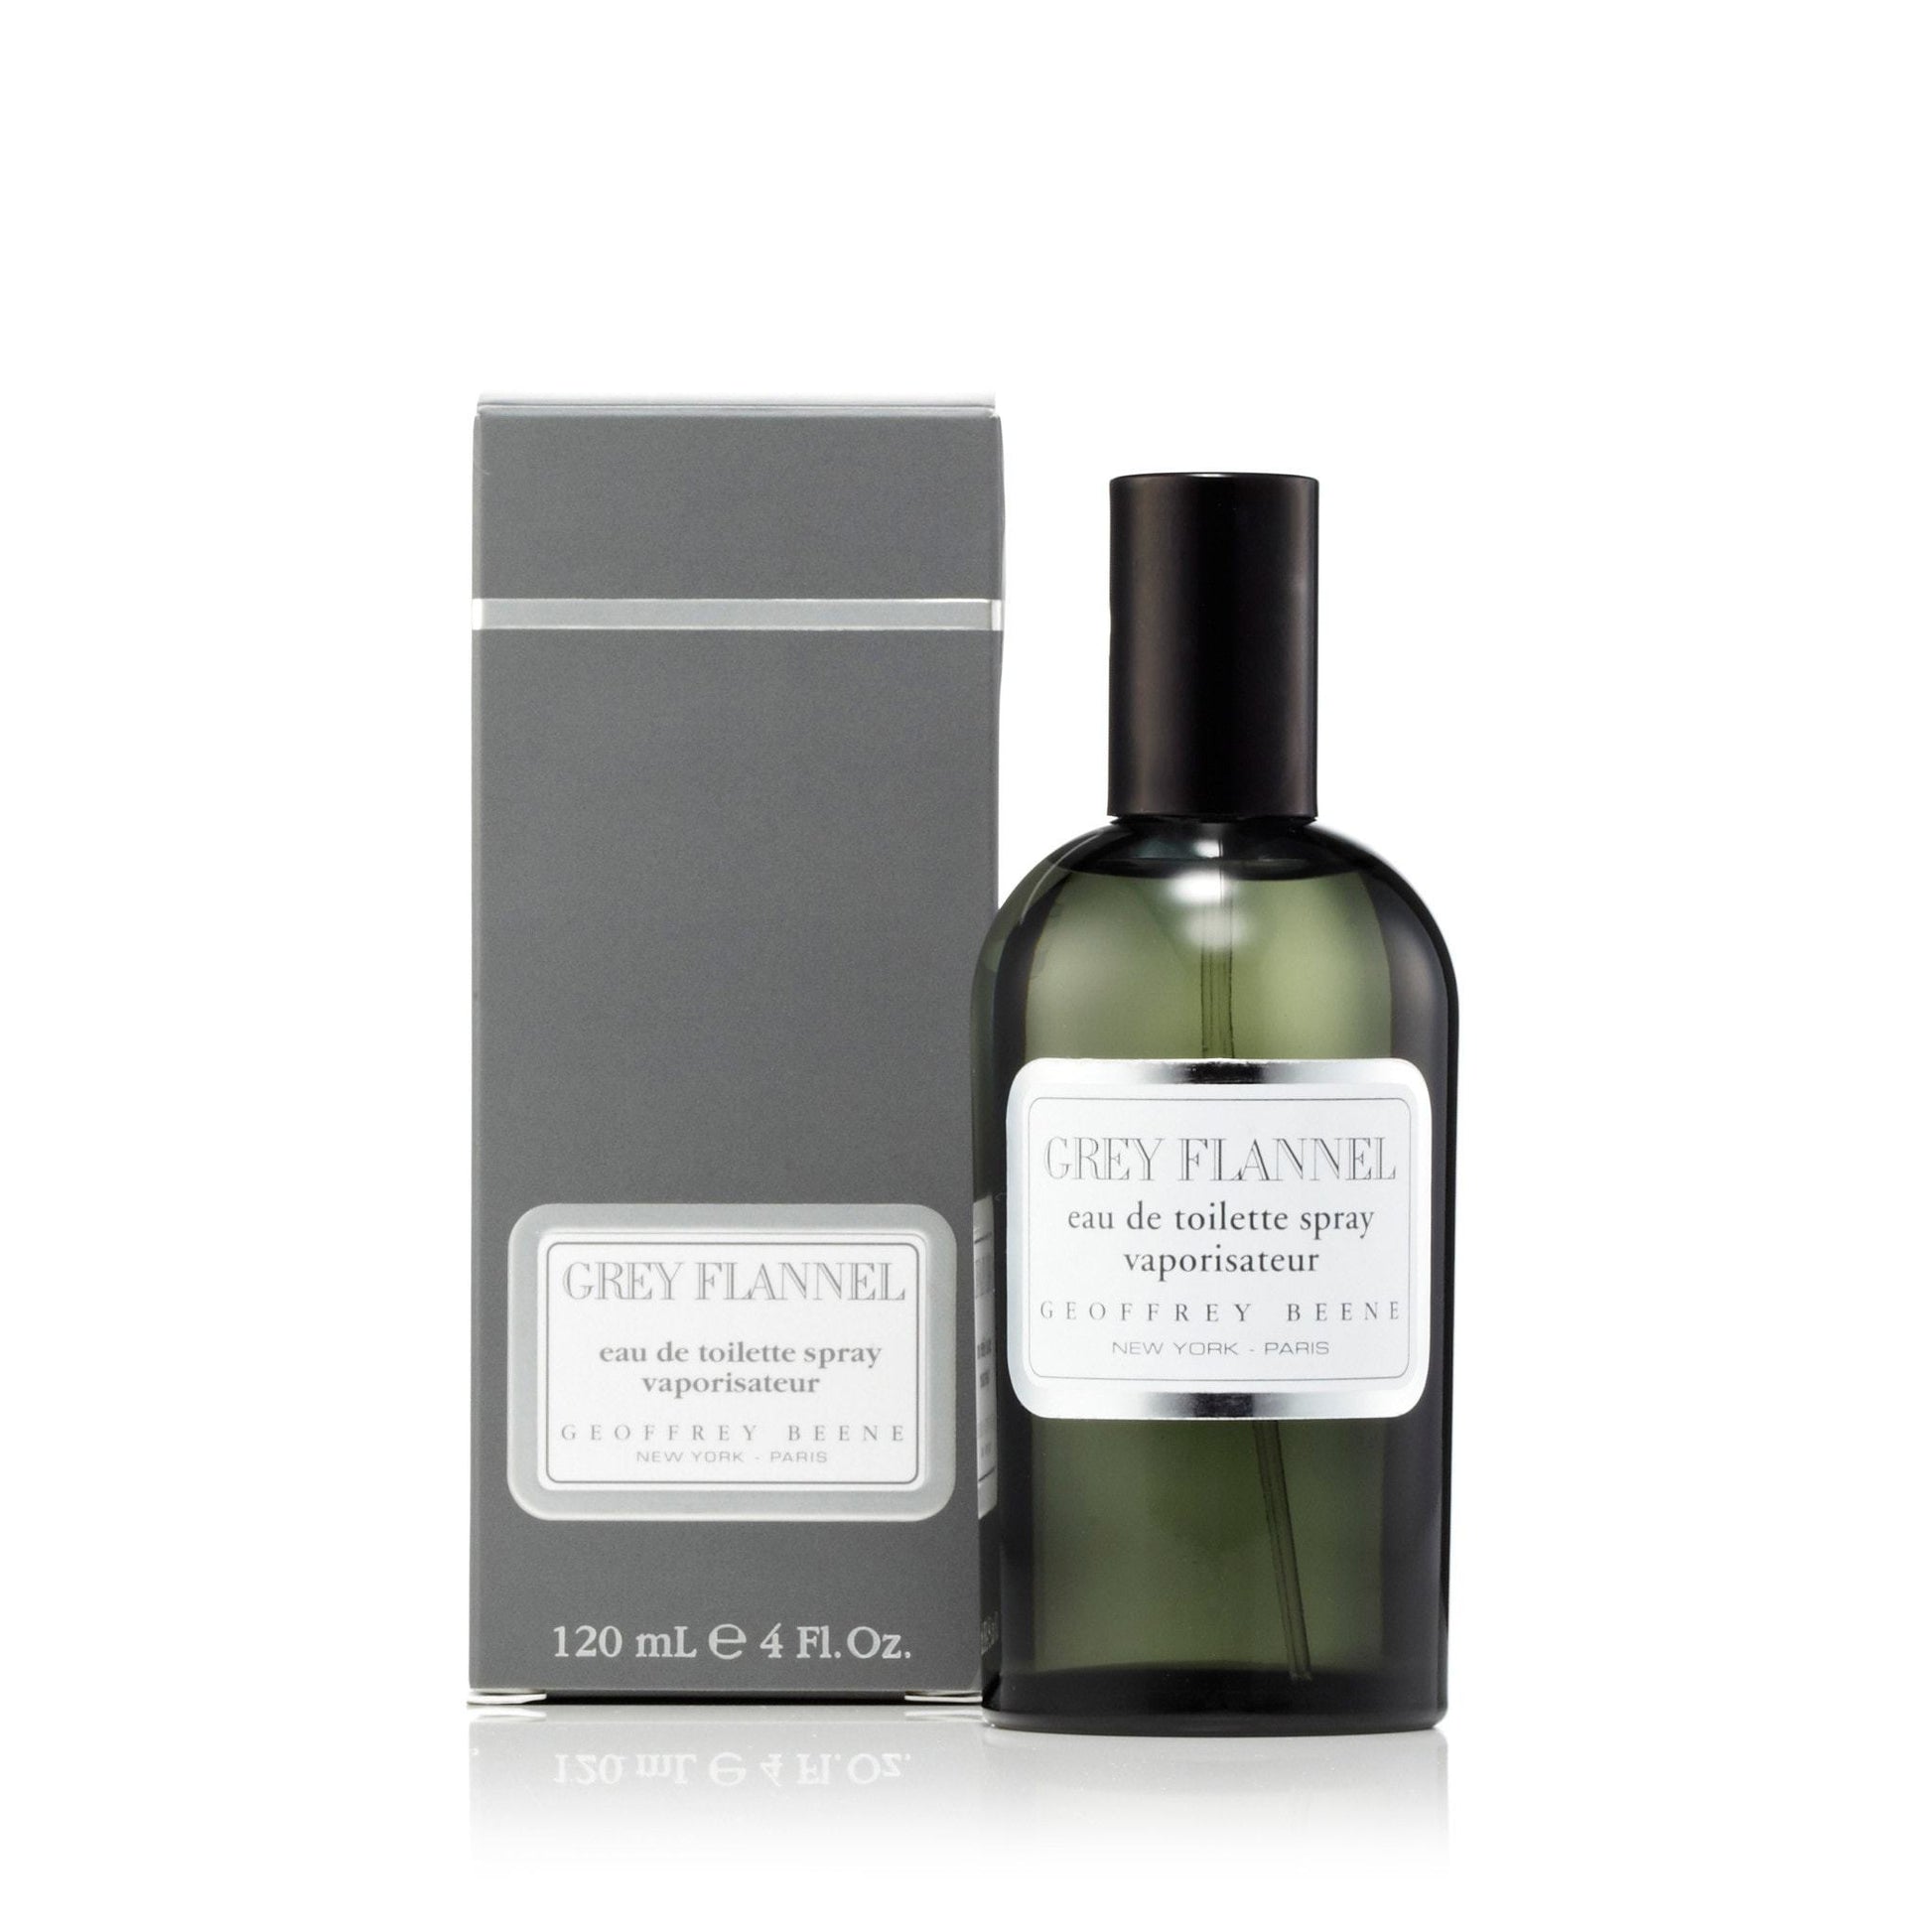 Grey Flannel Eau de Toilette Spray for Men by Geoffrey Beene, Product image 5